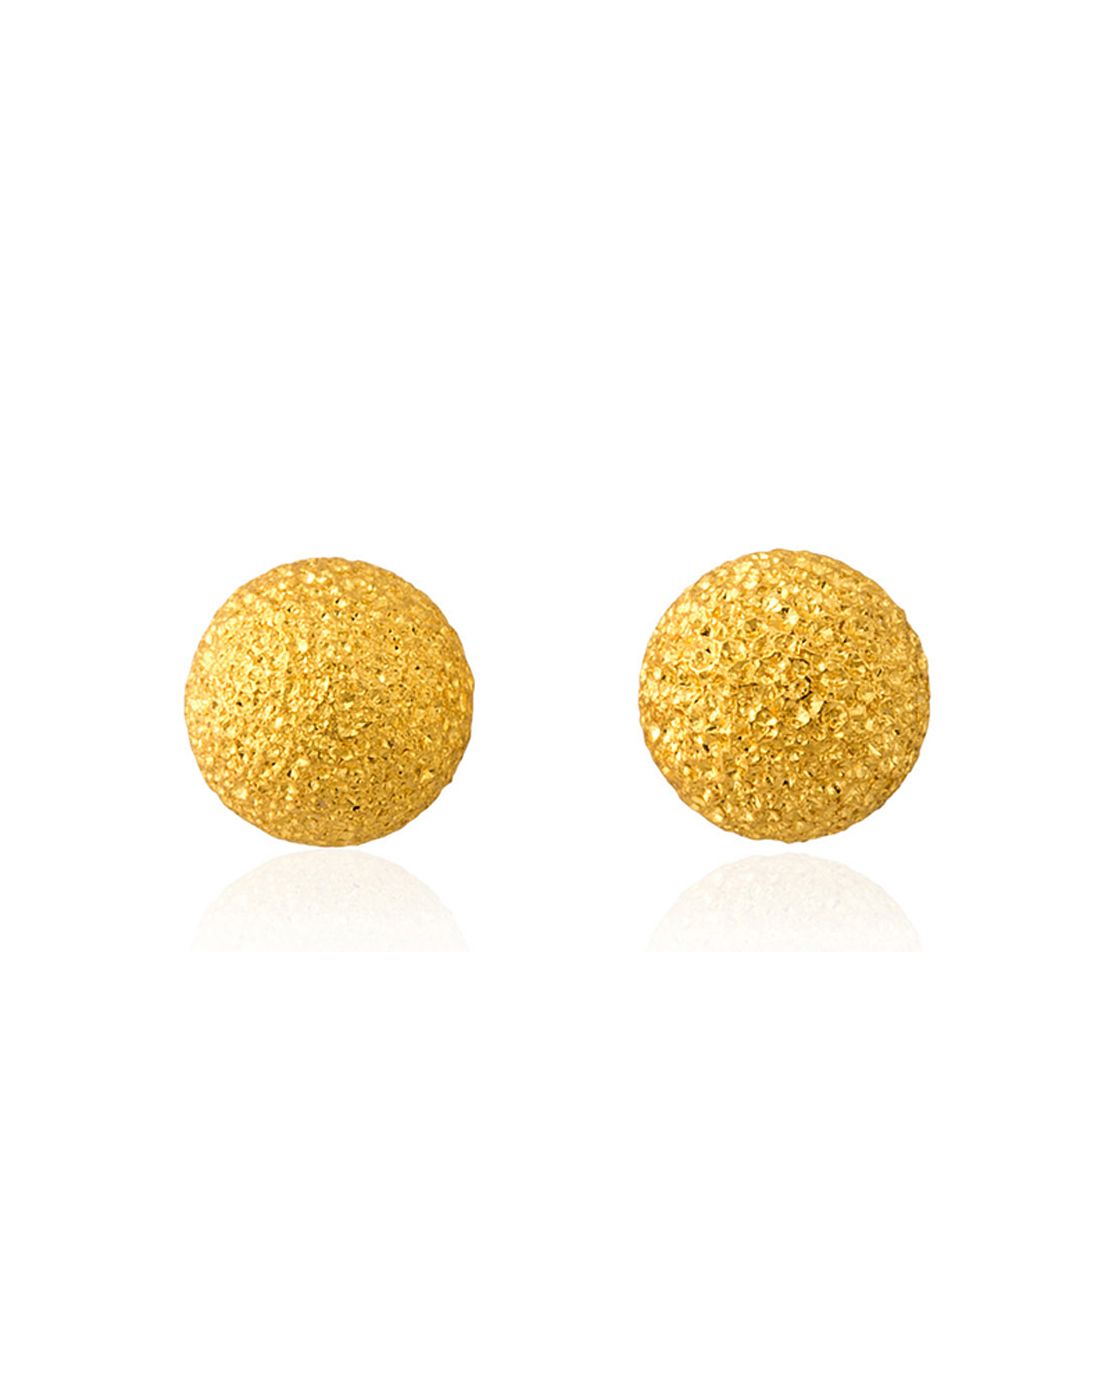 中国珠宝黄金750耳钉(中国黄金金750项链价格)